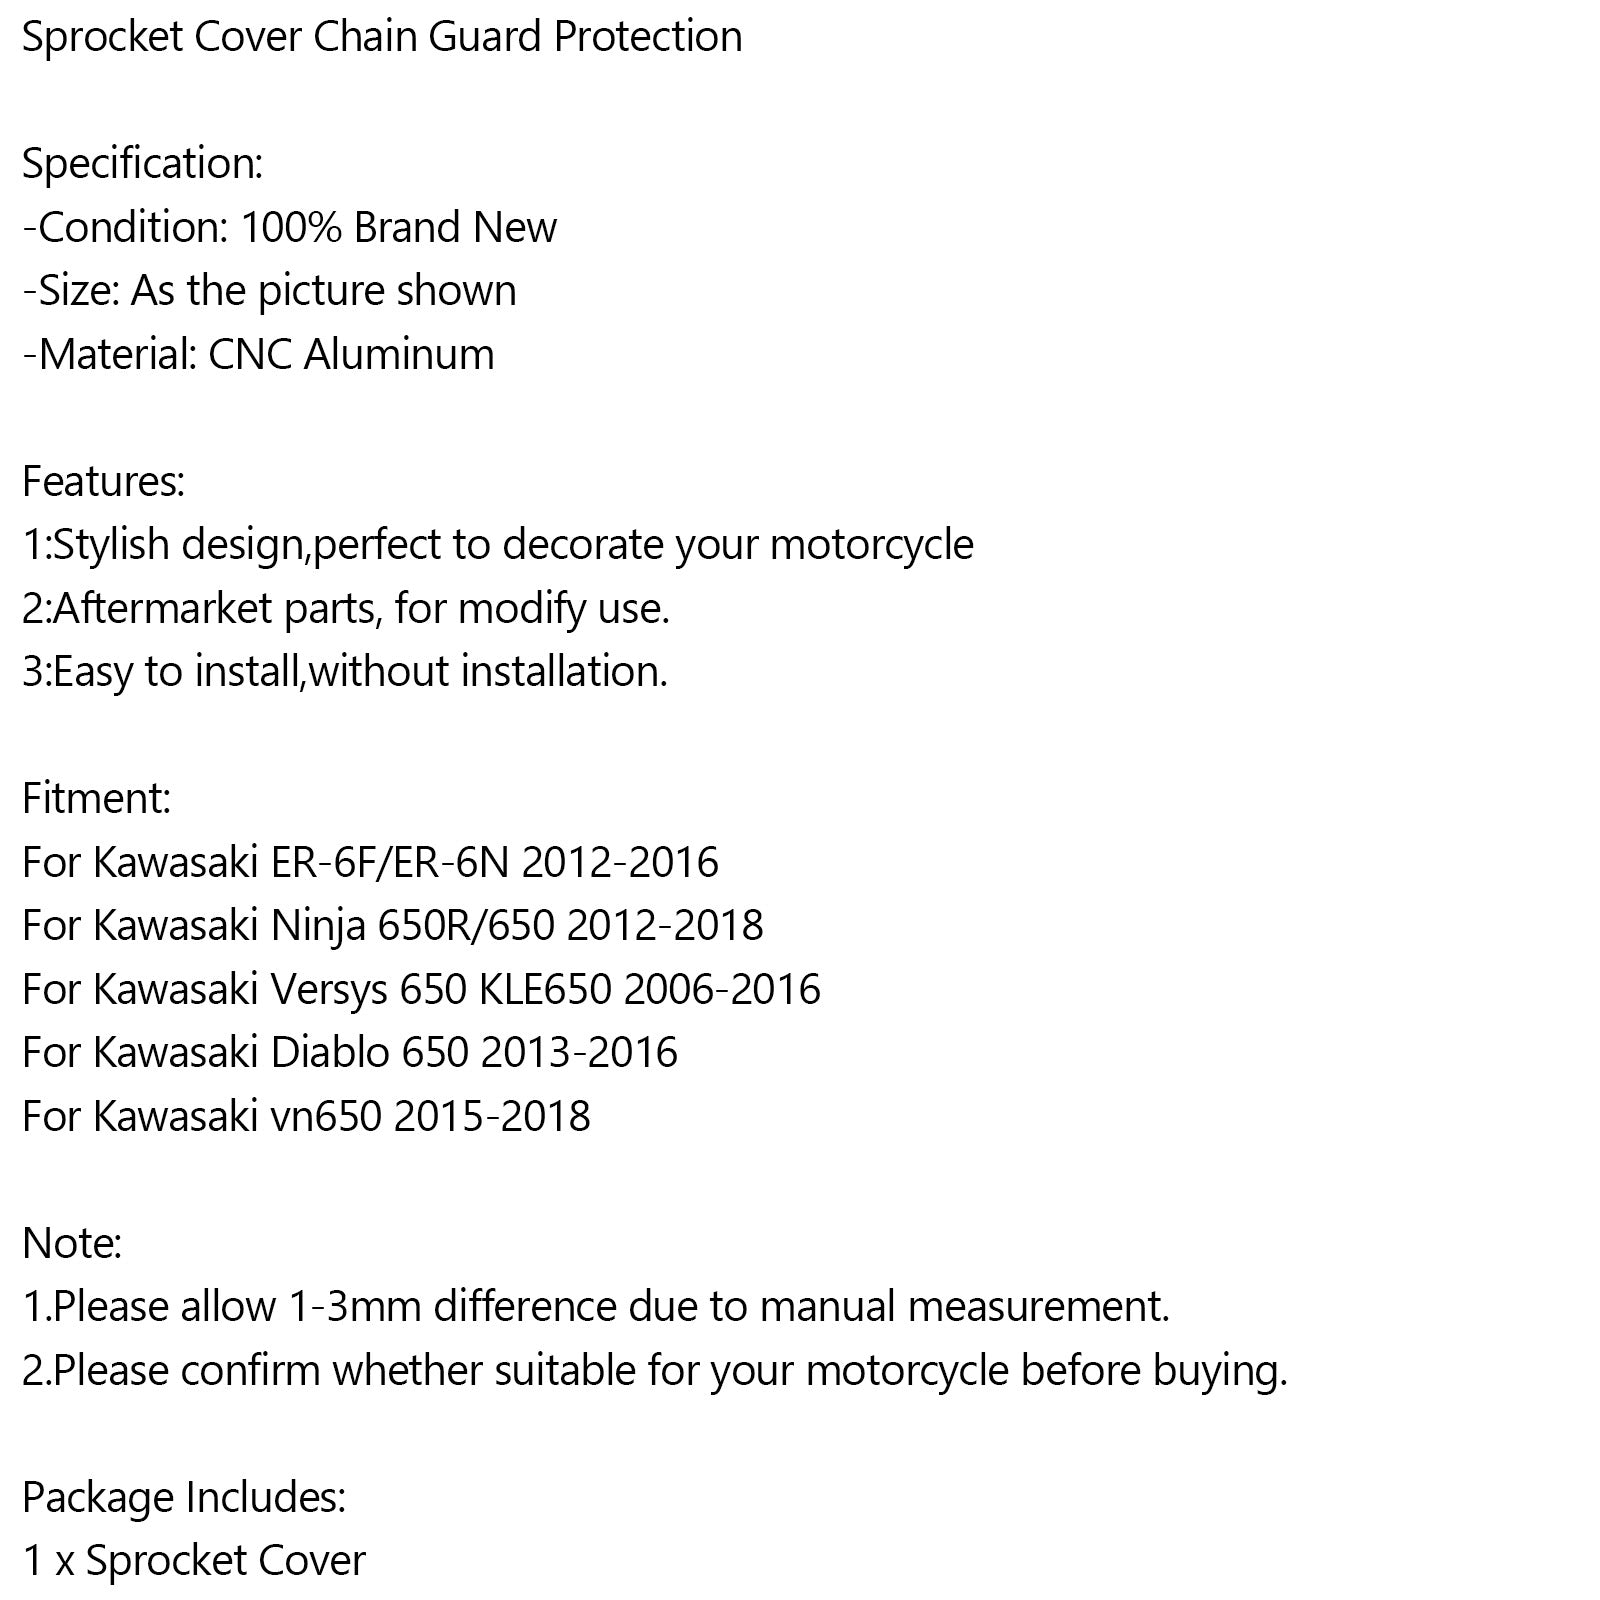 Protezione protezione catena coperchio pignone per Kawasaki Ninja Vulcan 650 ER-6N